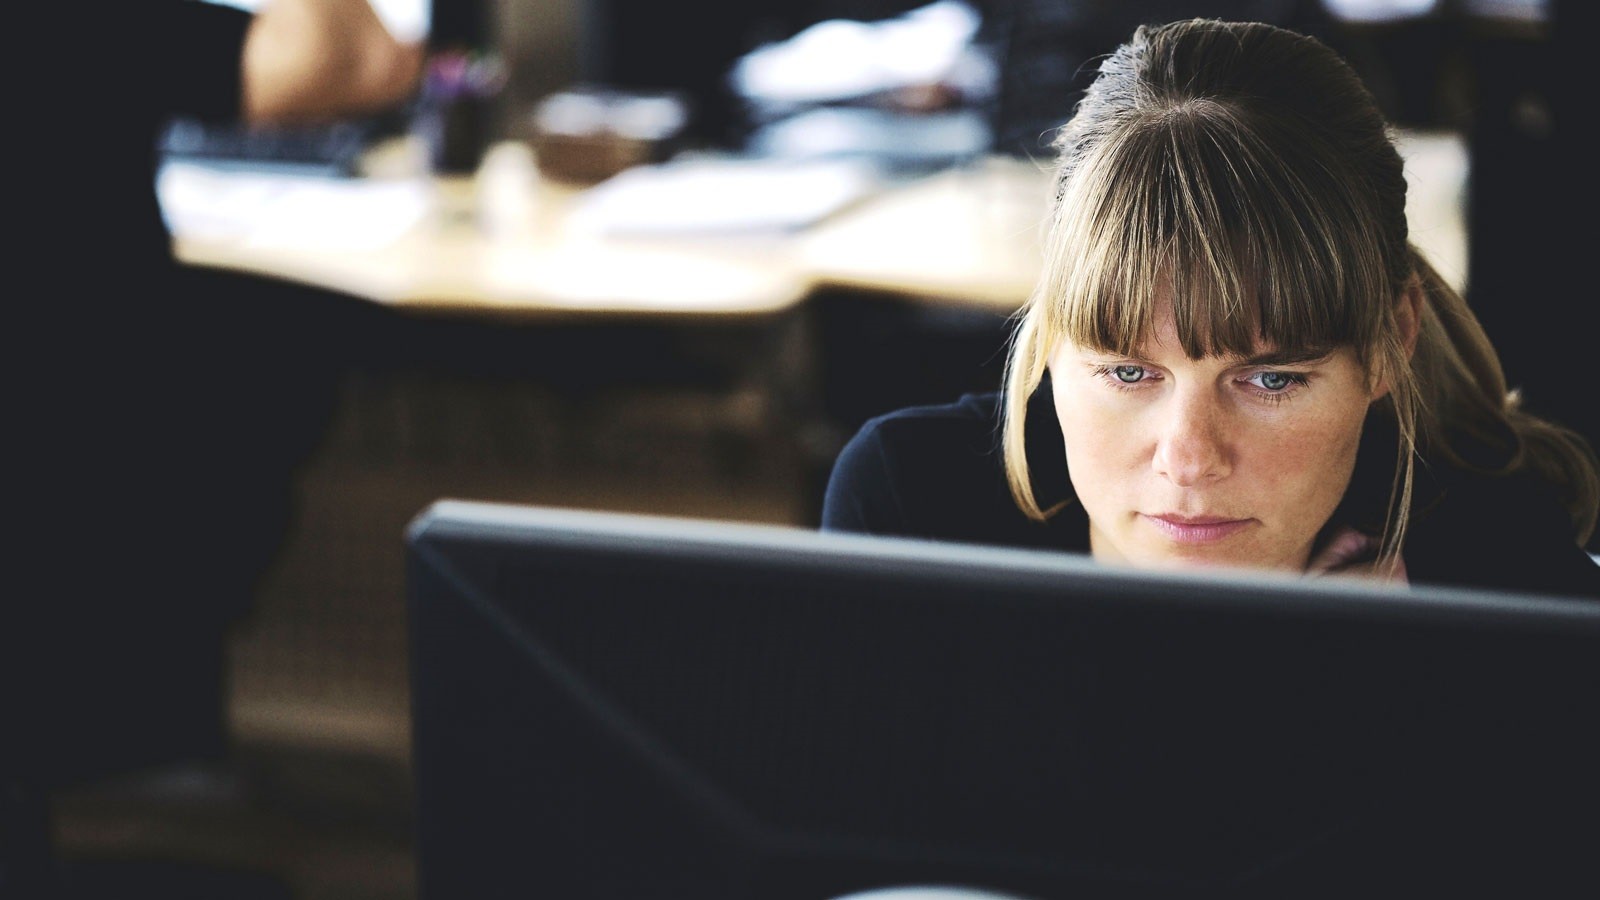 Kvinde kigger koncentreret på computerskærm i kontormiljø